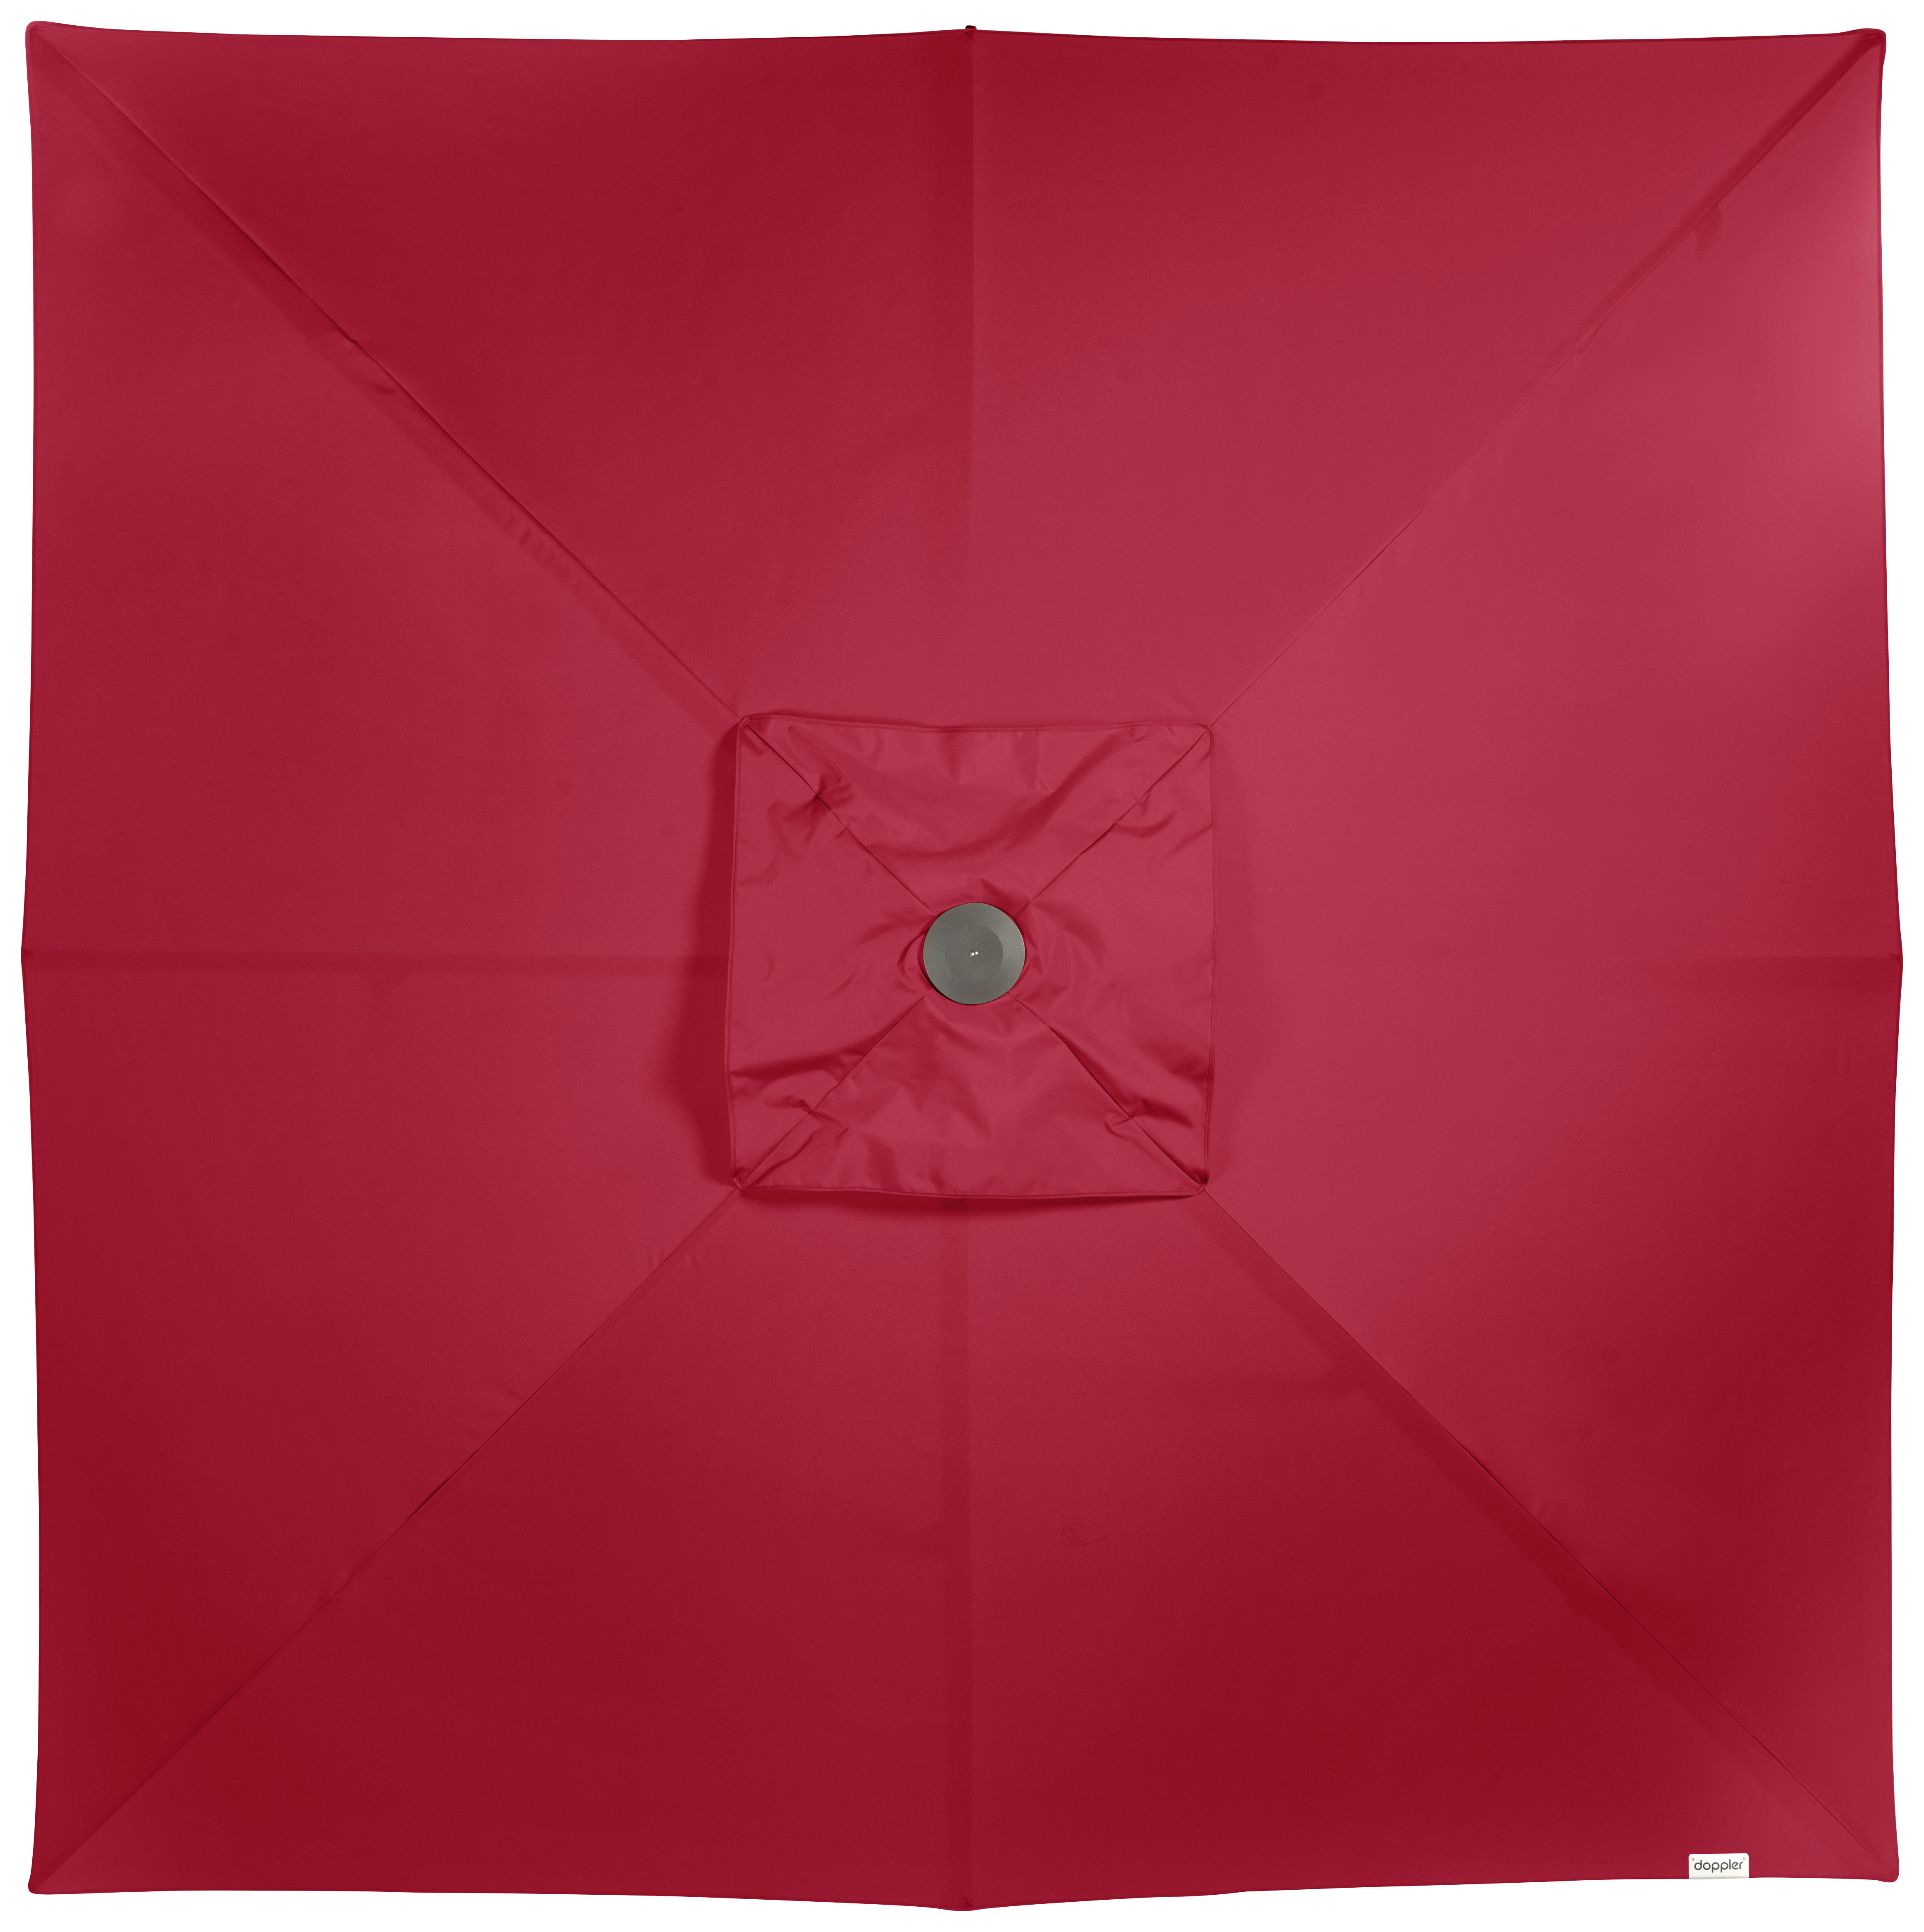 SONNENSCHIRM 350X350 cm Rot  - Silberfarben/Rot, Basics, Textil/Metall (350/350cm) - Doppler